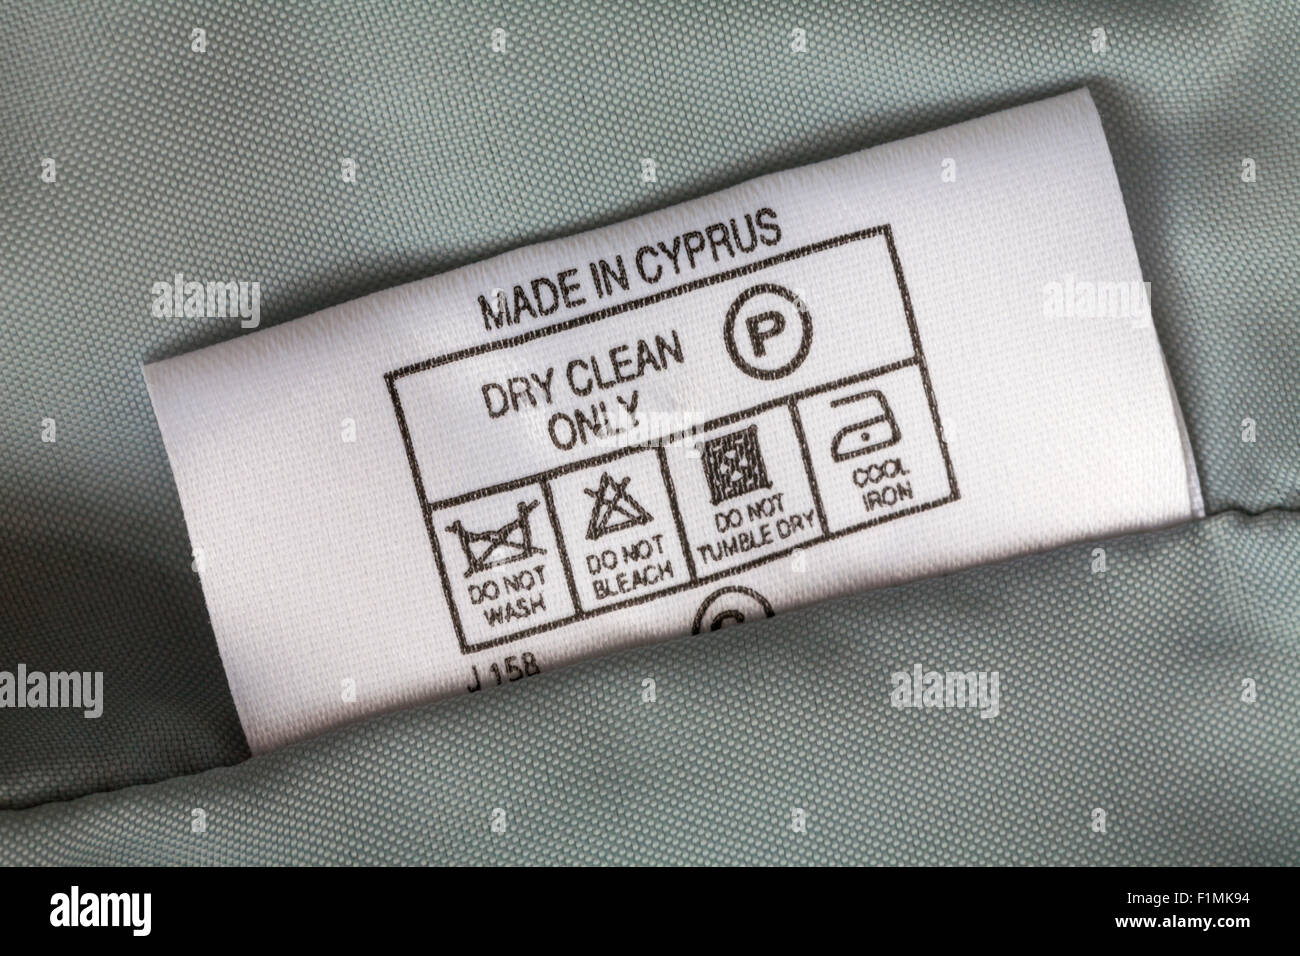 Étiquette dans le vêtement - fabriqué à Chypre nettoyage à sec seulement - vendu au Royaume-Uni, Grande-Bretagne - symboles et instructions de lavage d'entretien Banque D'Images